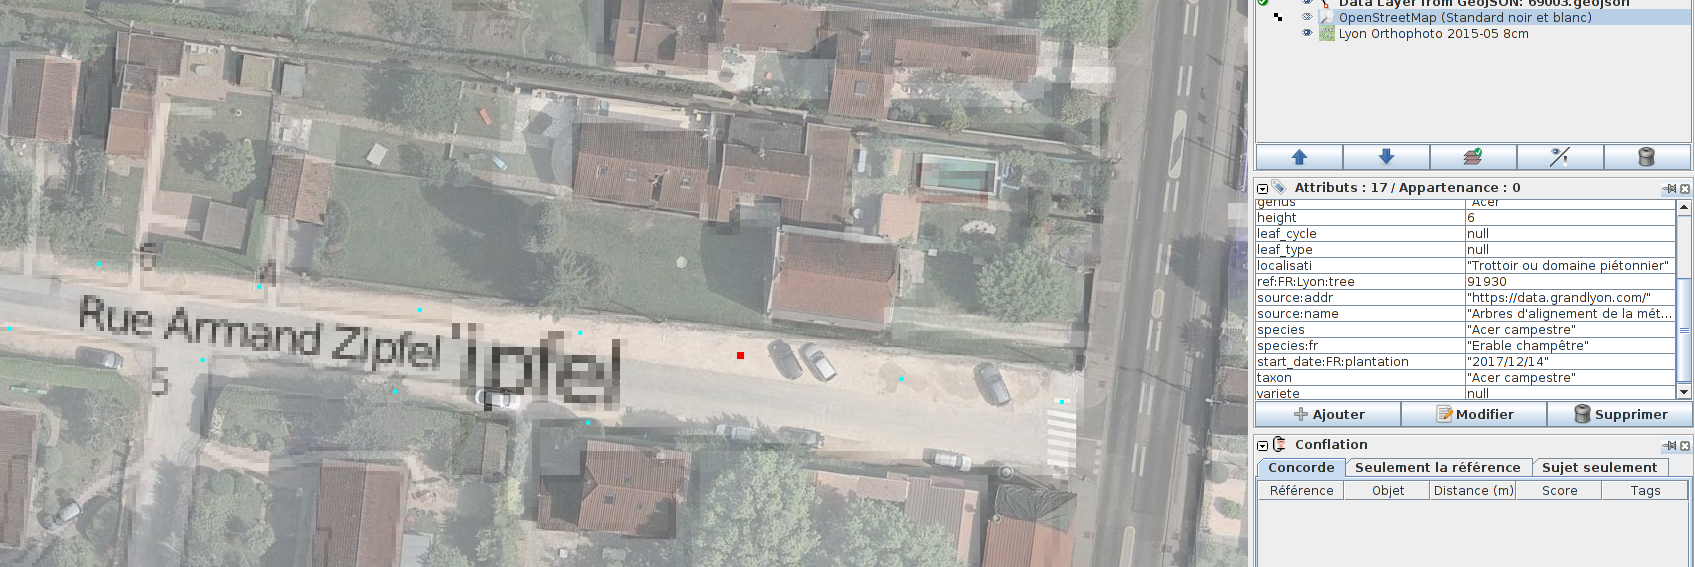 Capture d'écran de JOSM dans une rue en travaux, la photo aérienne est de 2015 les plantations indiquées en fin 2017